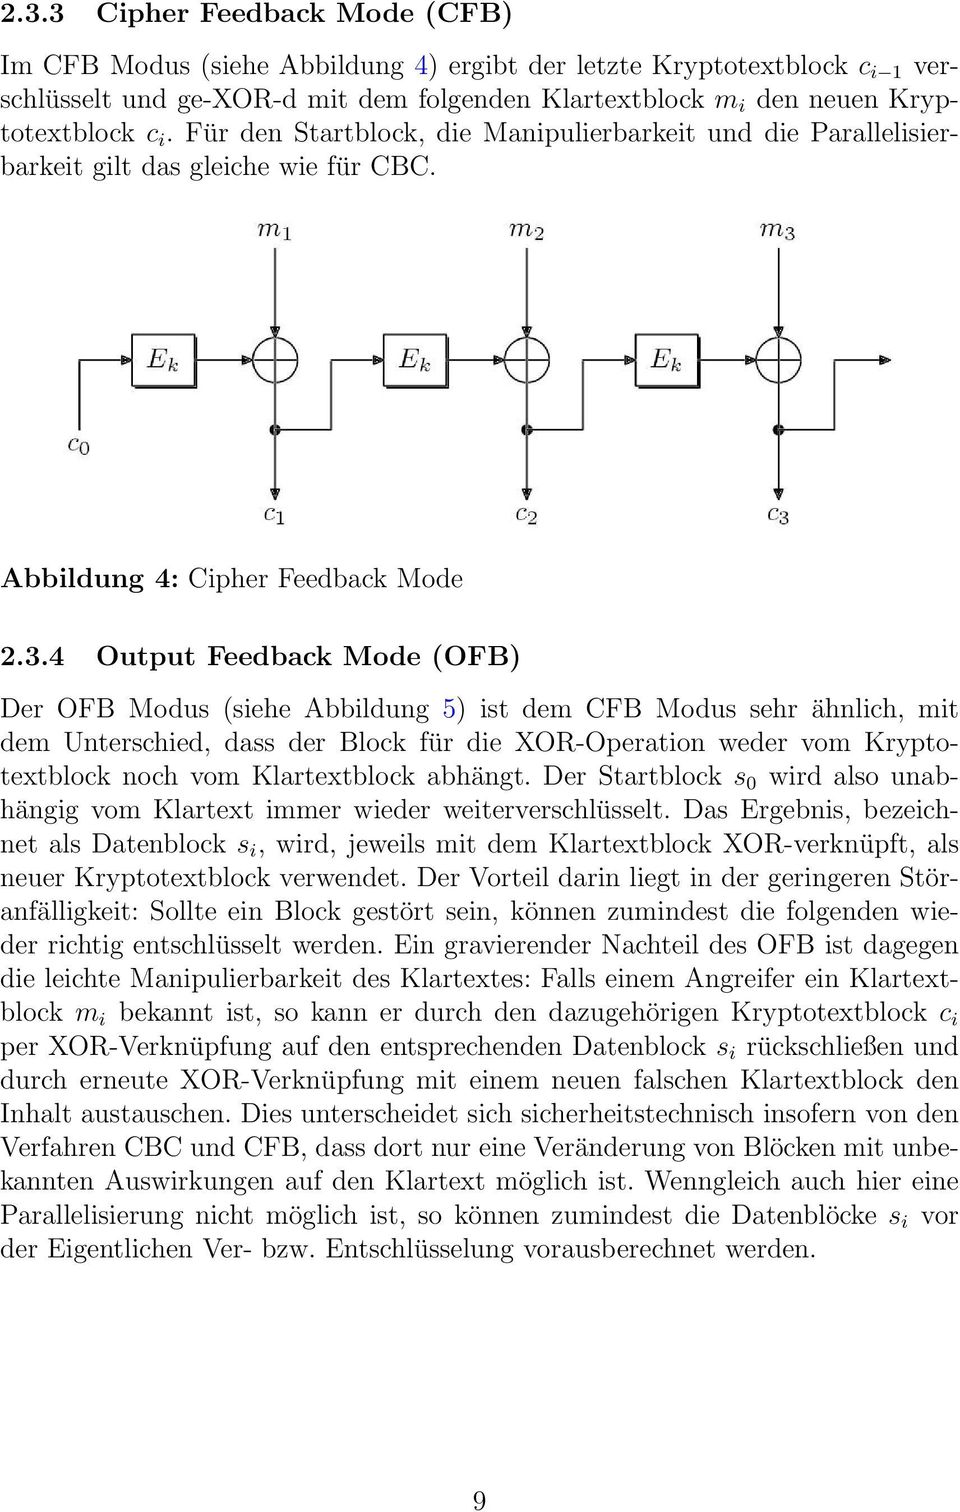 4 Output Feedback Mode (OFB) Der OFB Modus (siehe Abbildung 5) ist dem CFB Modus sehr ähnlich, mit dem Unterschied, dass der Block für die XOR-Operation weder vom Kryptotextblock noch vom